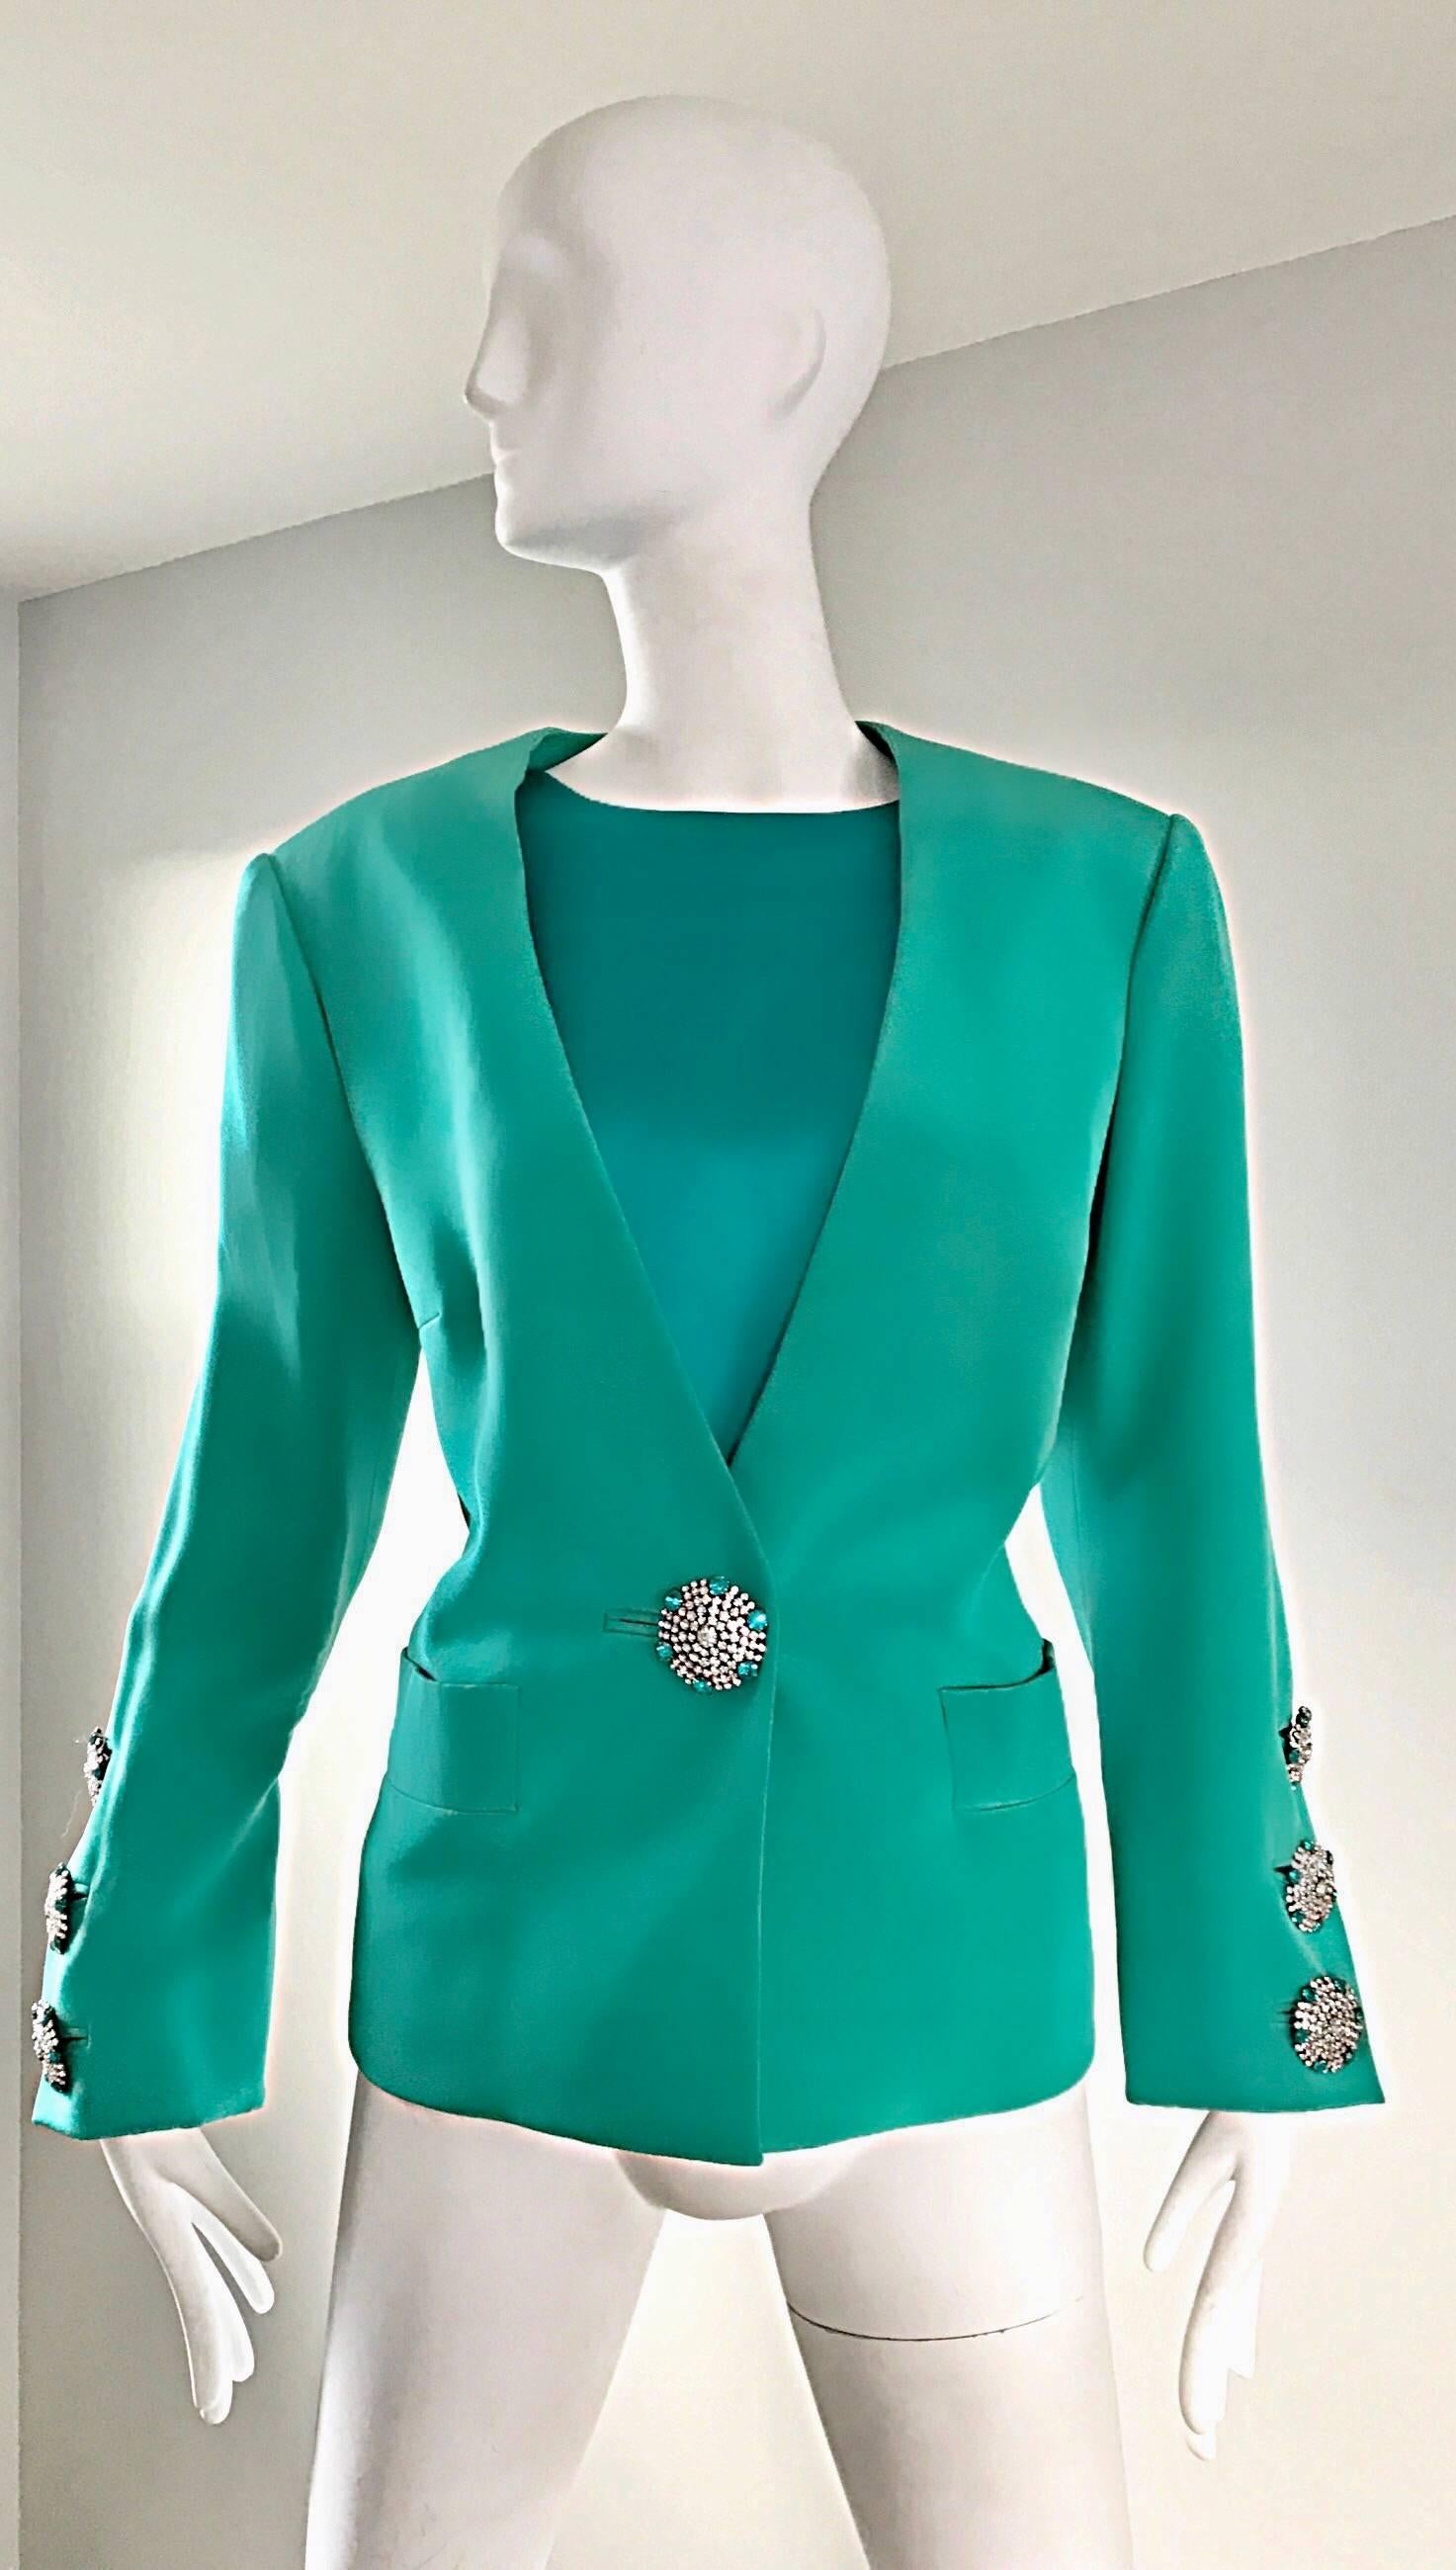 Vintage YVES SAINT LAURENT Haute Couture numéroté Kelly green silk jacket and top ! Une nuance de vert éclatante et frappante. Boutons surdimensionnés en diamant phénoménal - trois à chaque poignet et un sur le corsage avant. Deux poches (une de